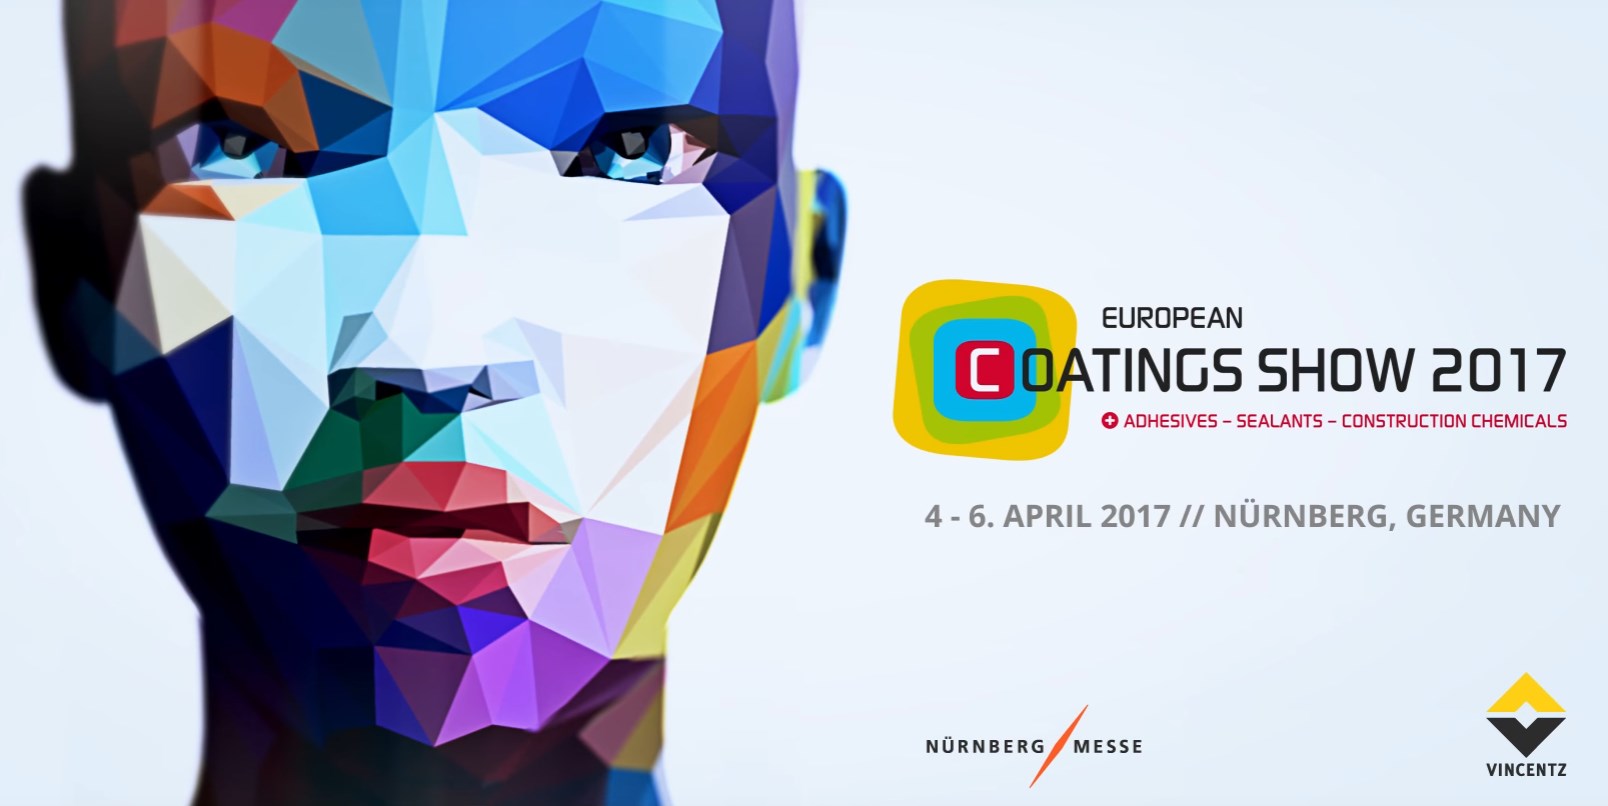 April 4-6, 2017 - European Coatings Show 2017